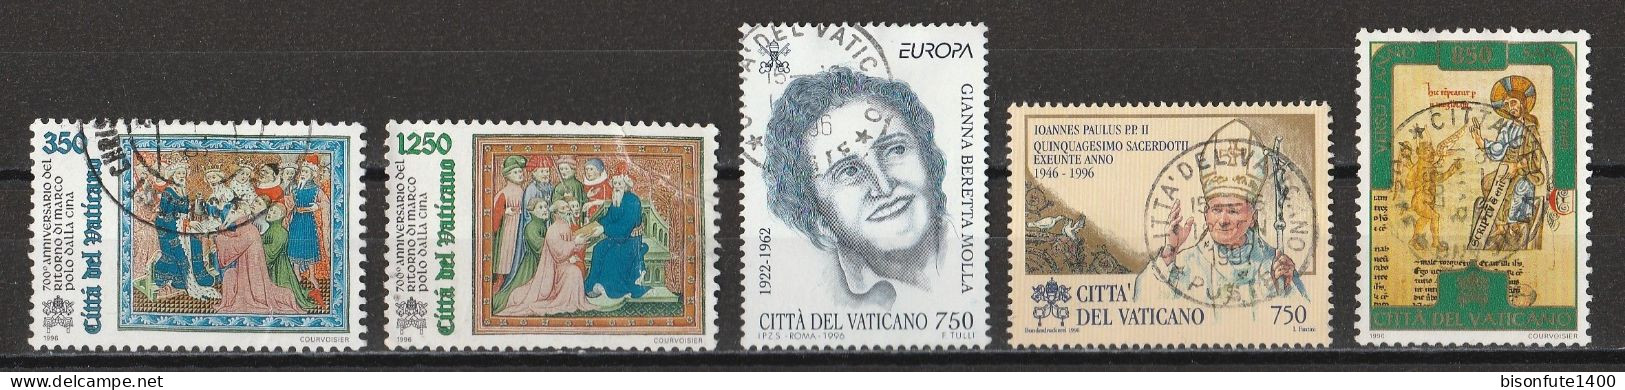 Vatican 1996 : Timbres Yvert & Tellier N° 1029 - 1031 - 1036 - 1044 - 1047 Et 1049 Oblitérés - Oblitérés